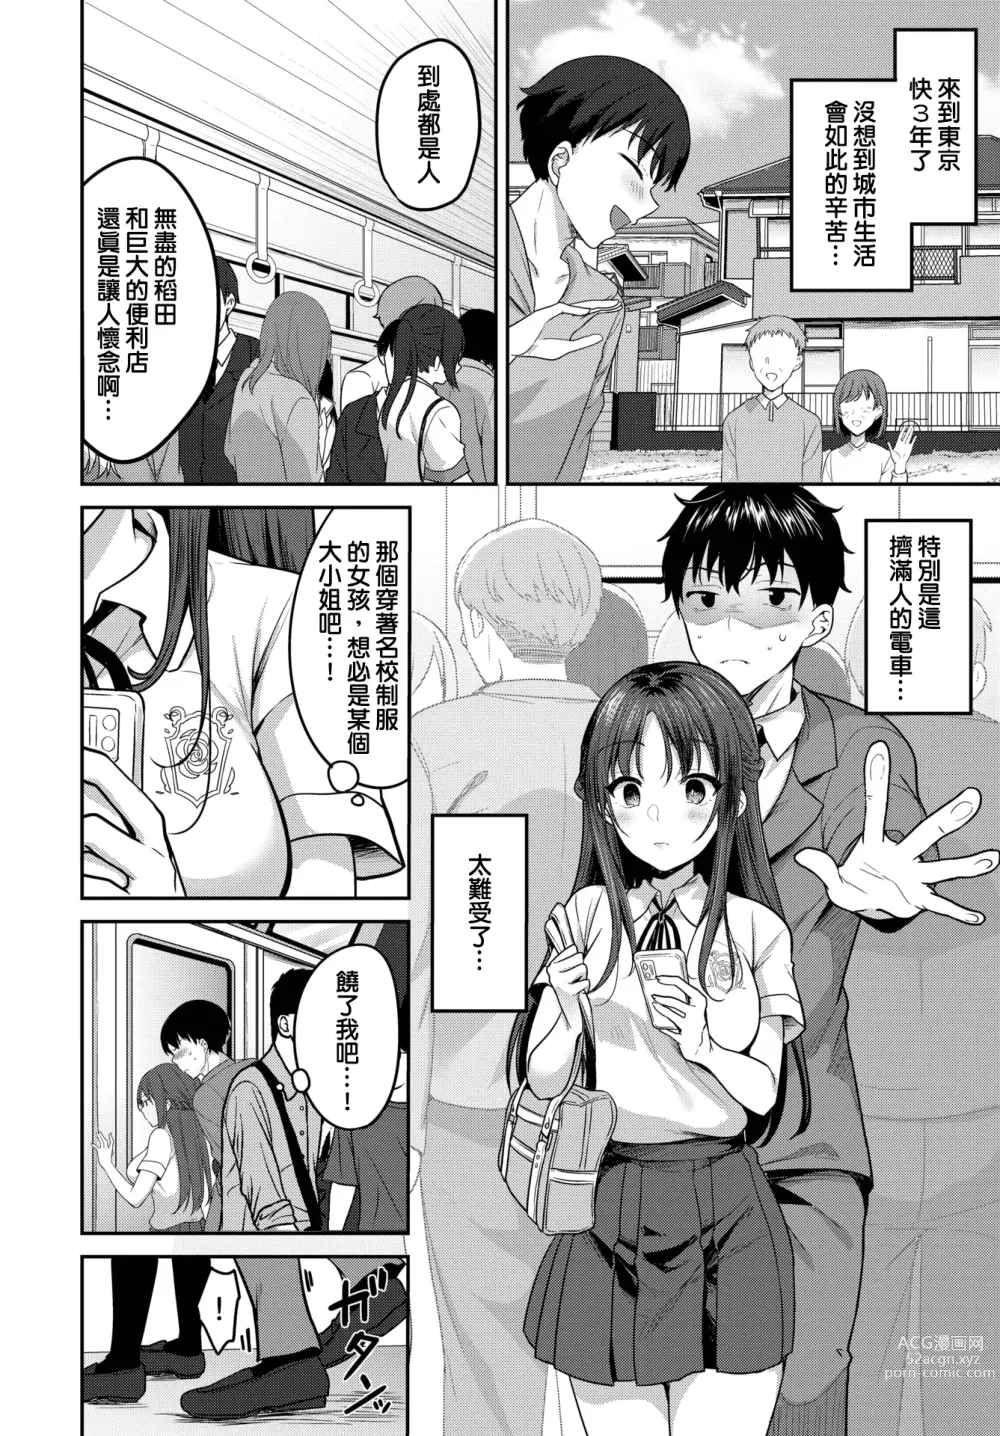 Page 2 of manga Natsu Arashi Moment